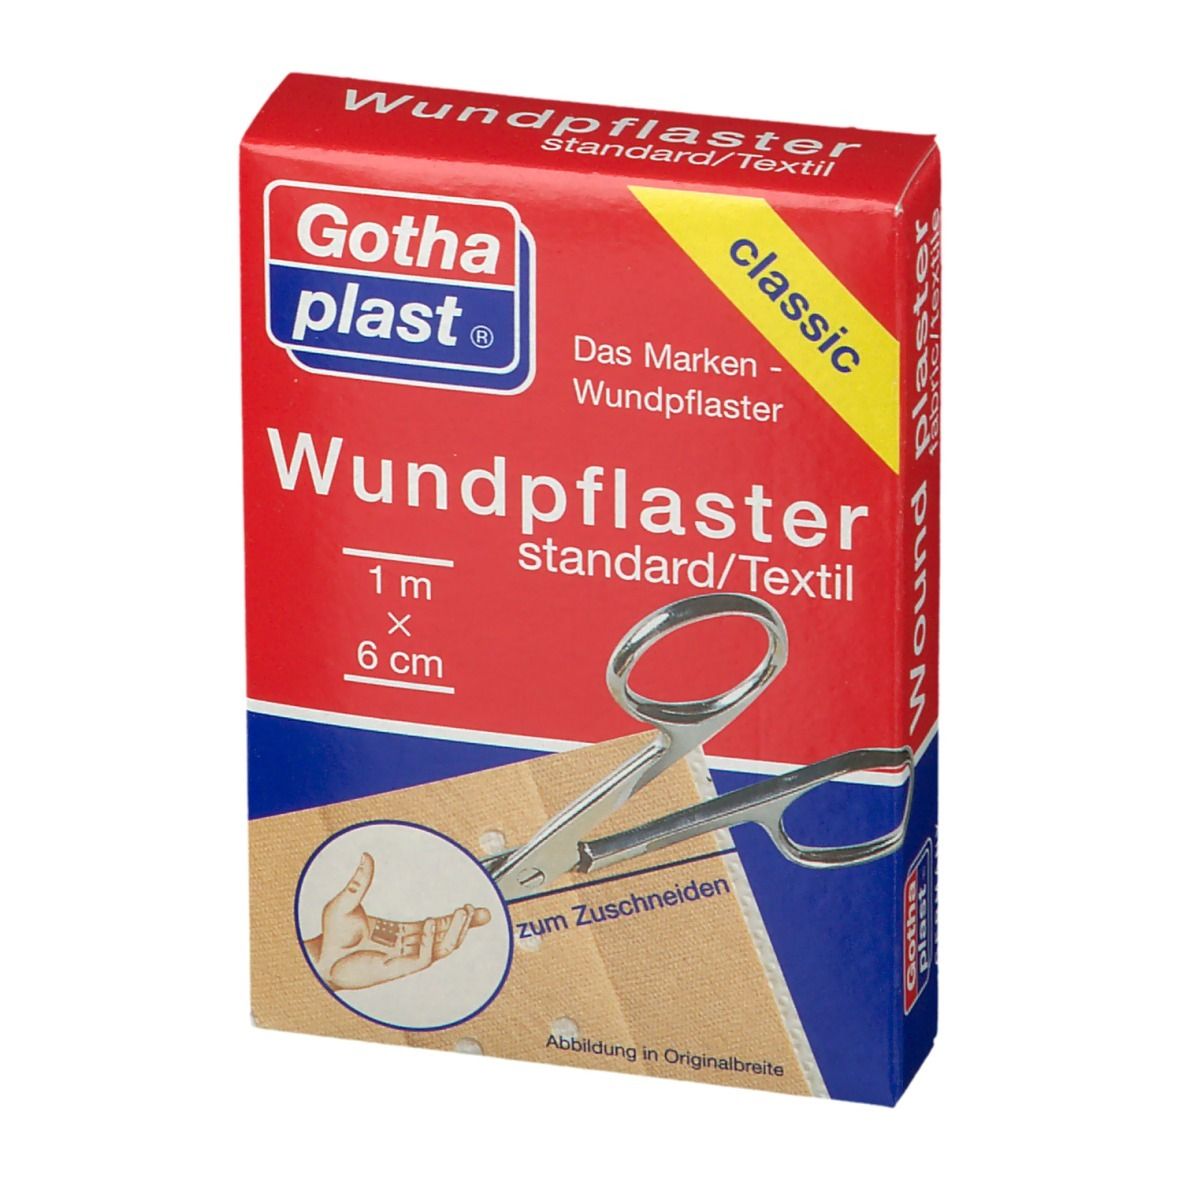 Gothaplast® Wundpflaster standard  1 m x 6 cm